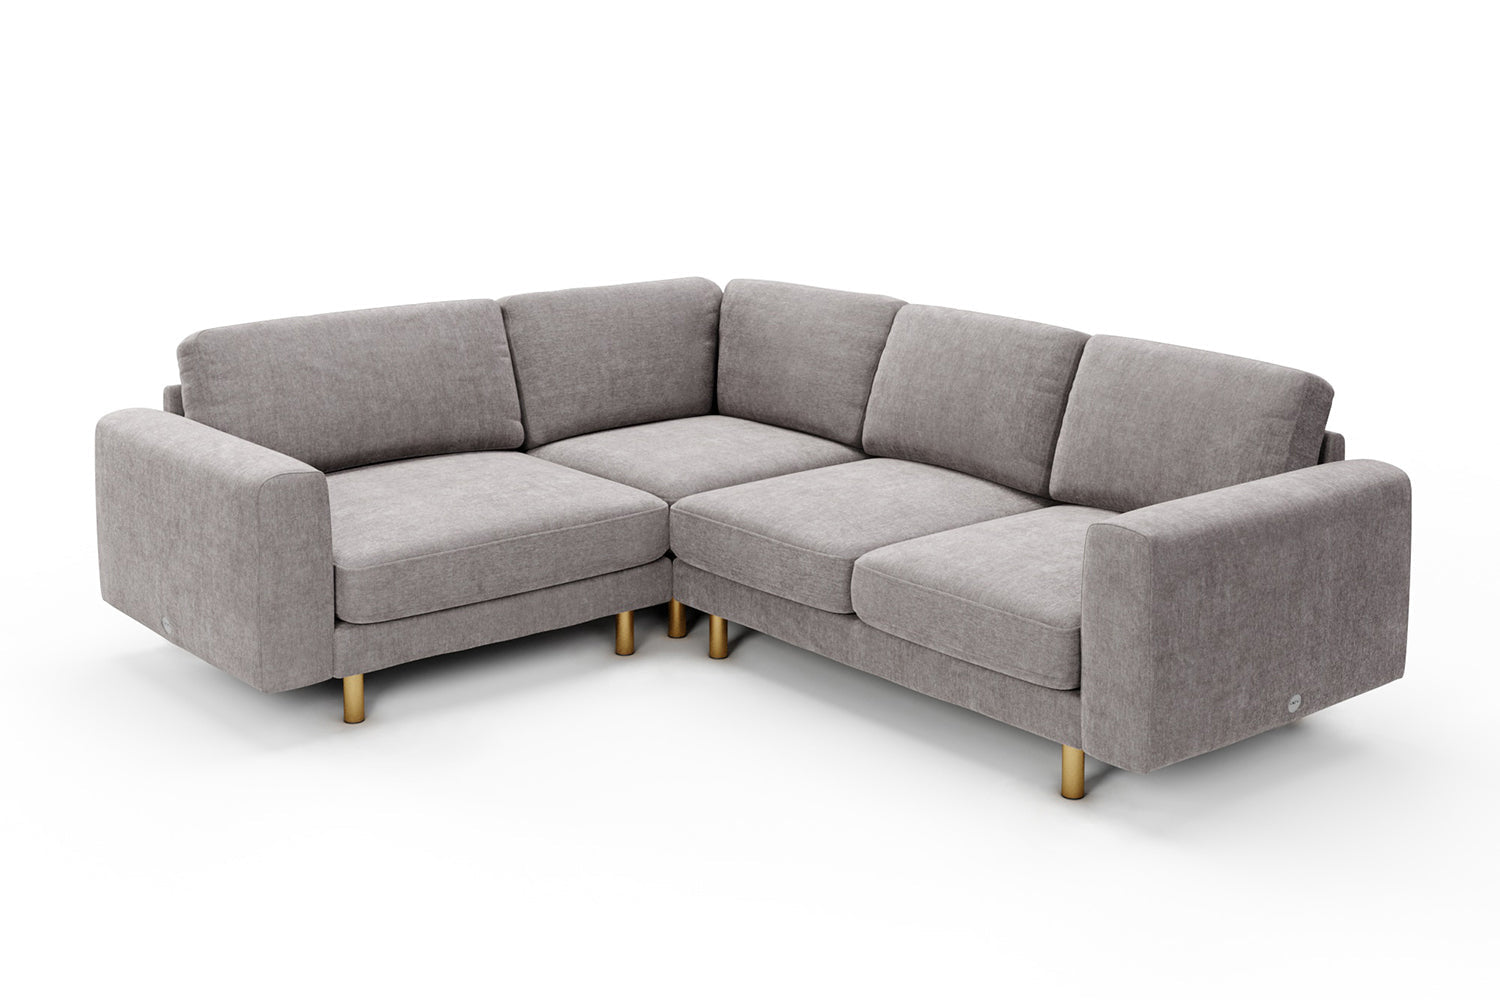 SNUG | The Big Chill Corner Sofa Small in Mid Grey